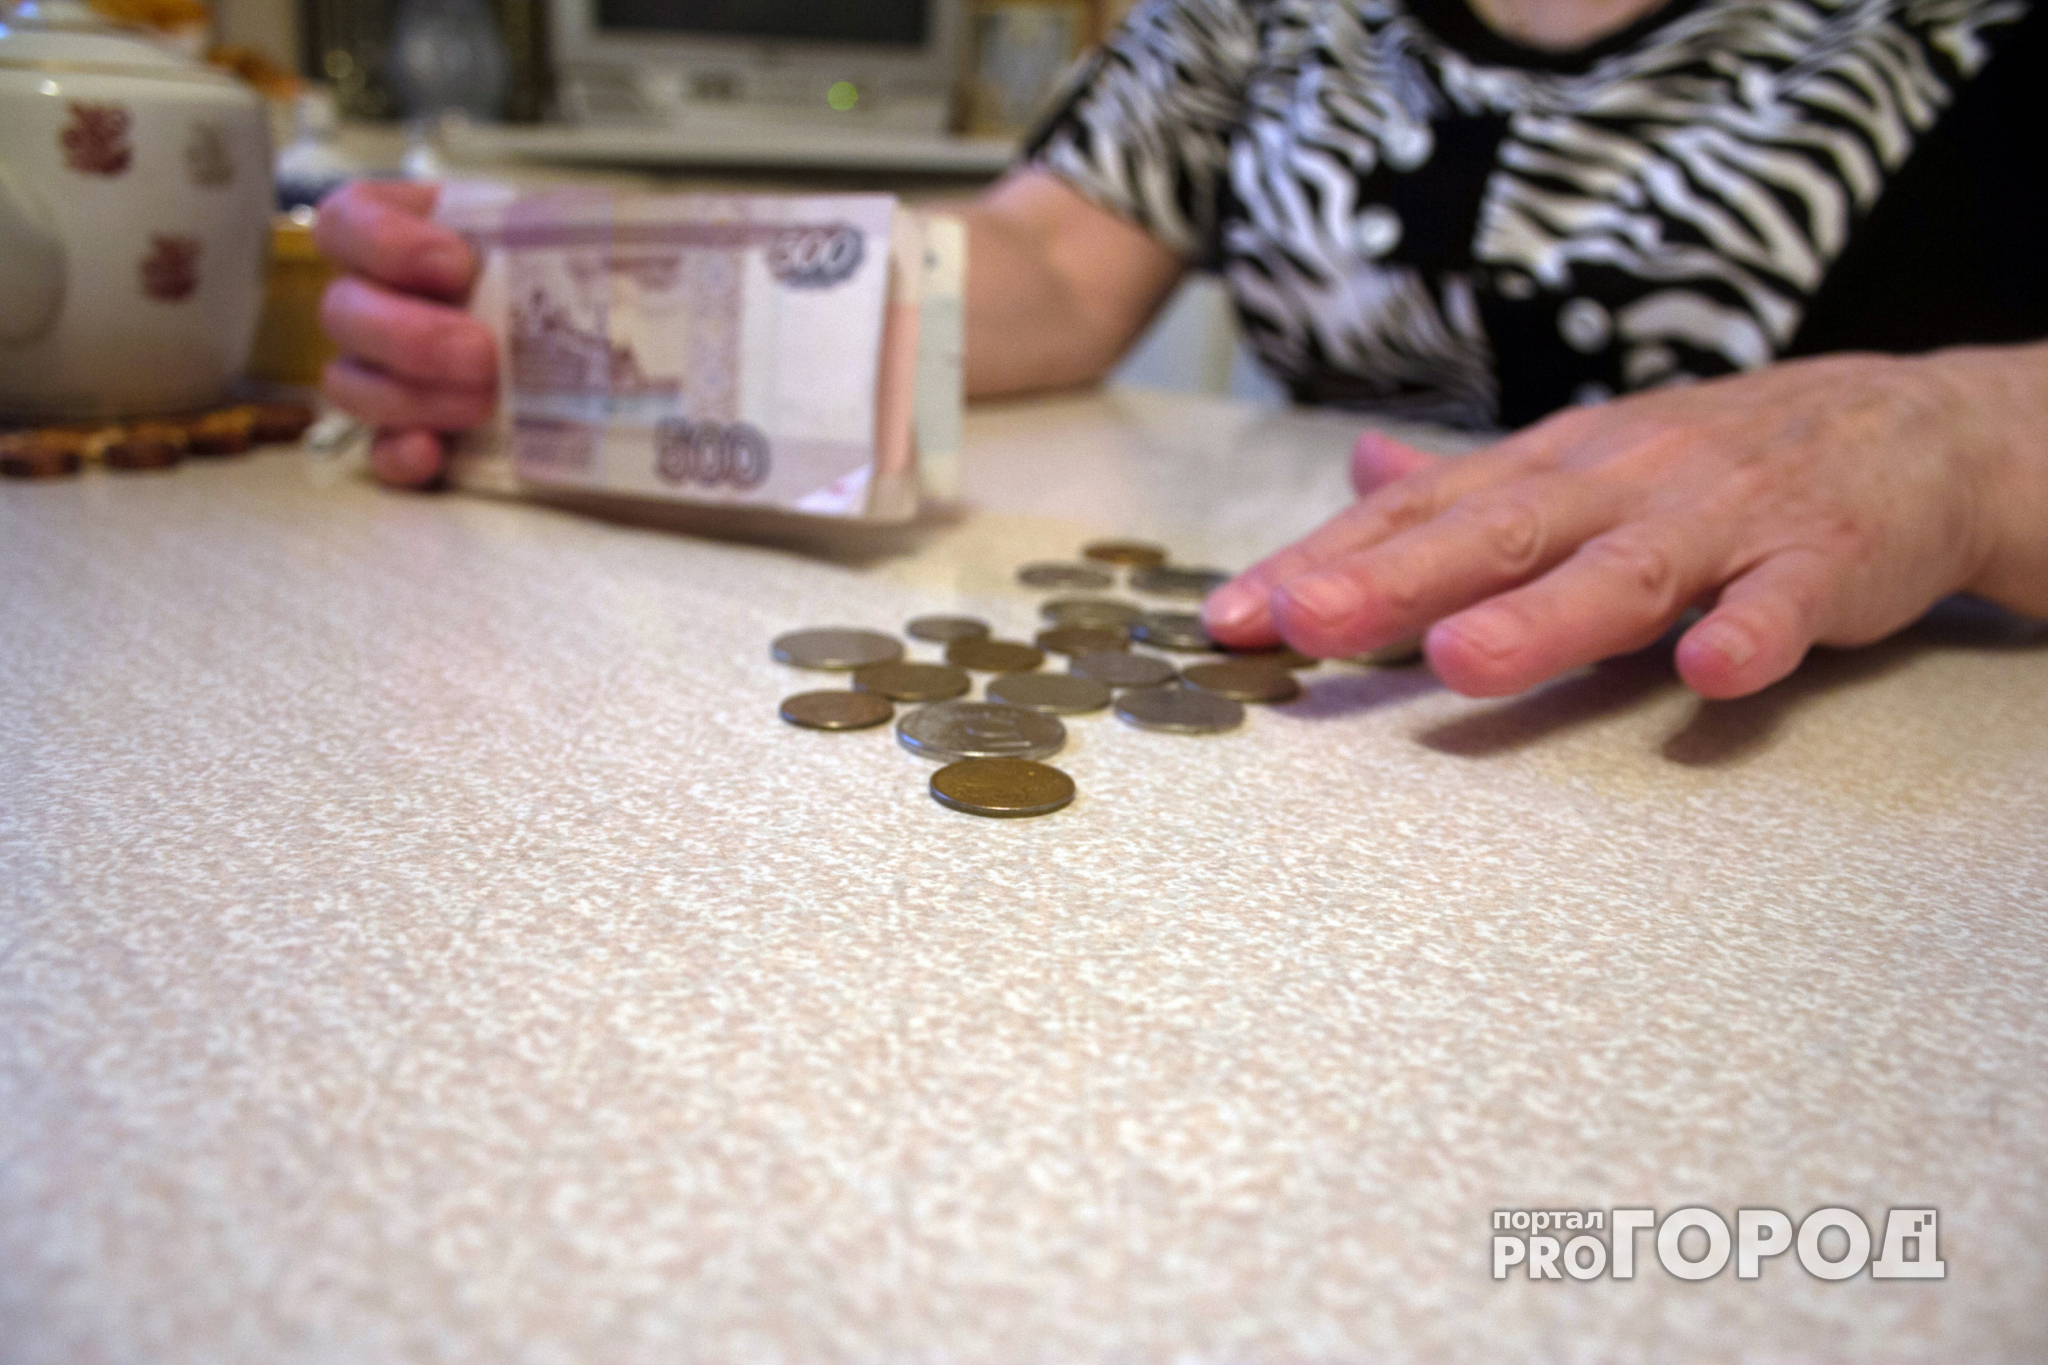 Новости России: Госдума продлили заморозку накопительной пенсии до 2020 года